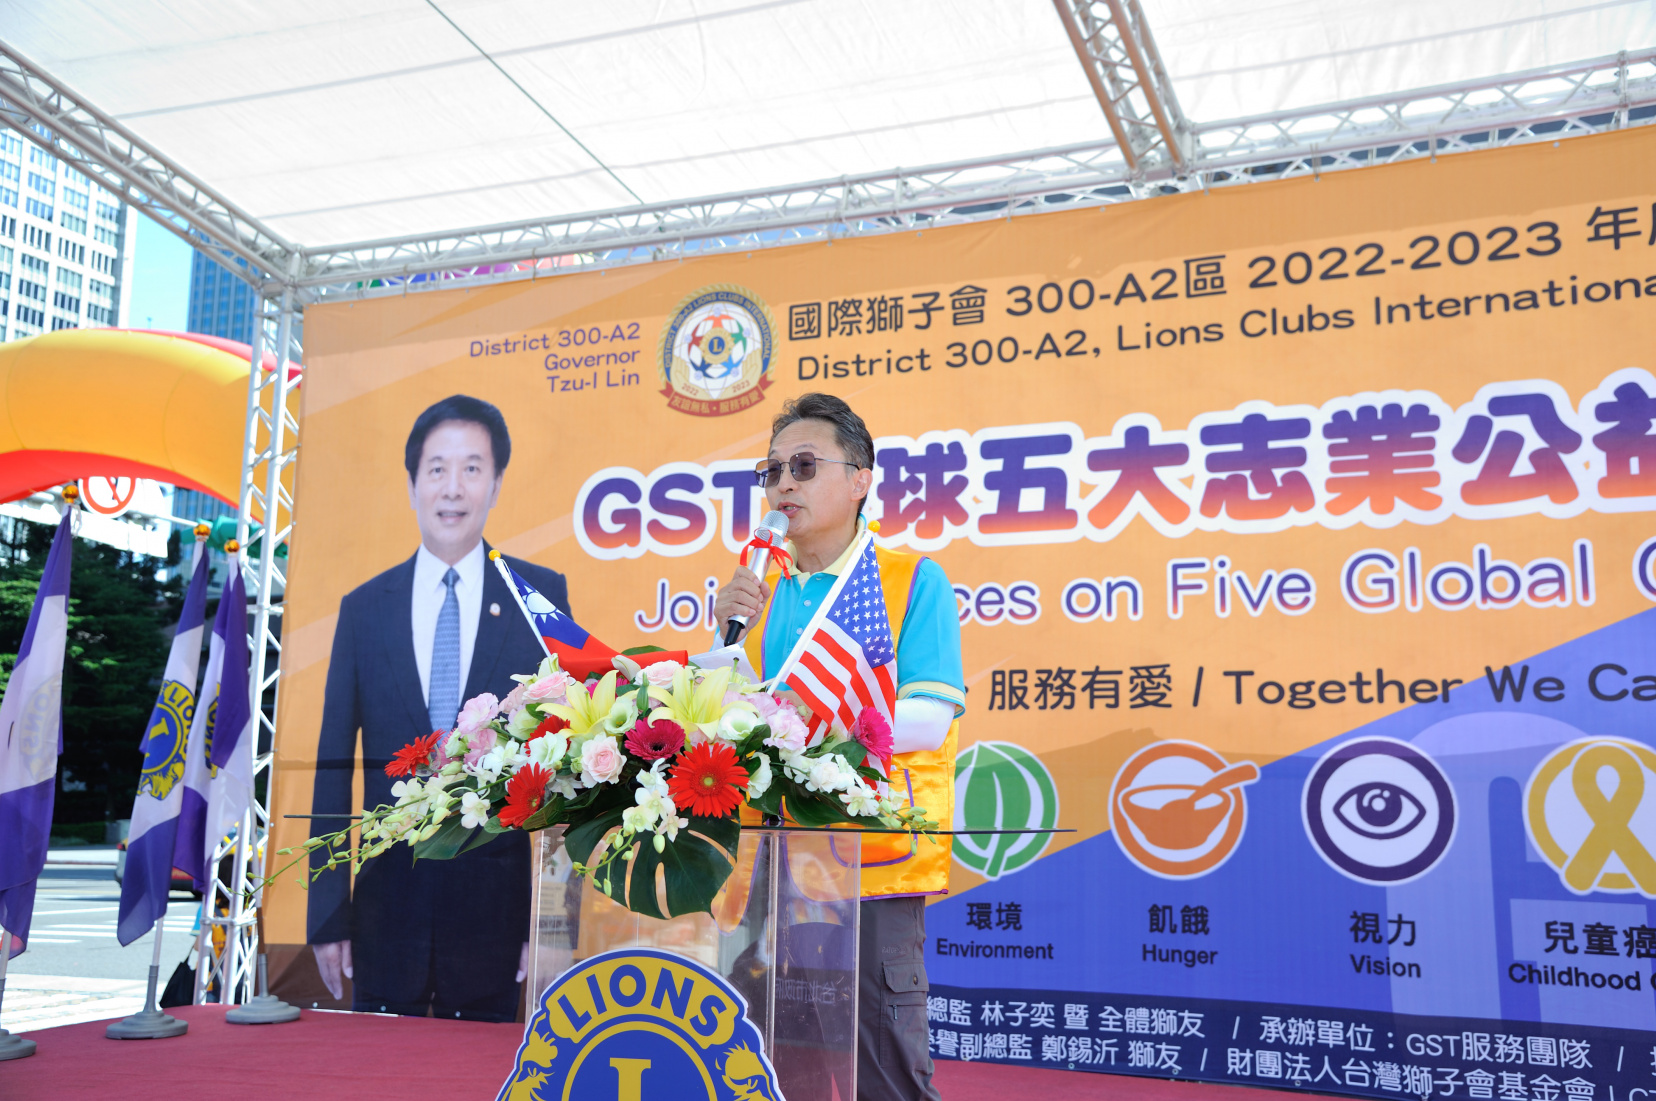 2022/11/19國際總會長蒞臨GST全球五大志業公益活動